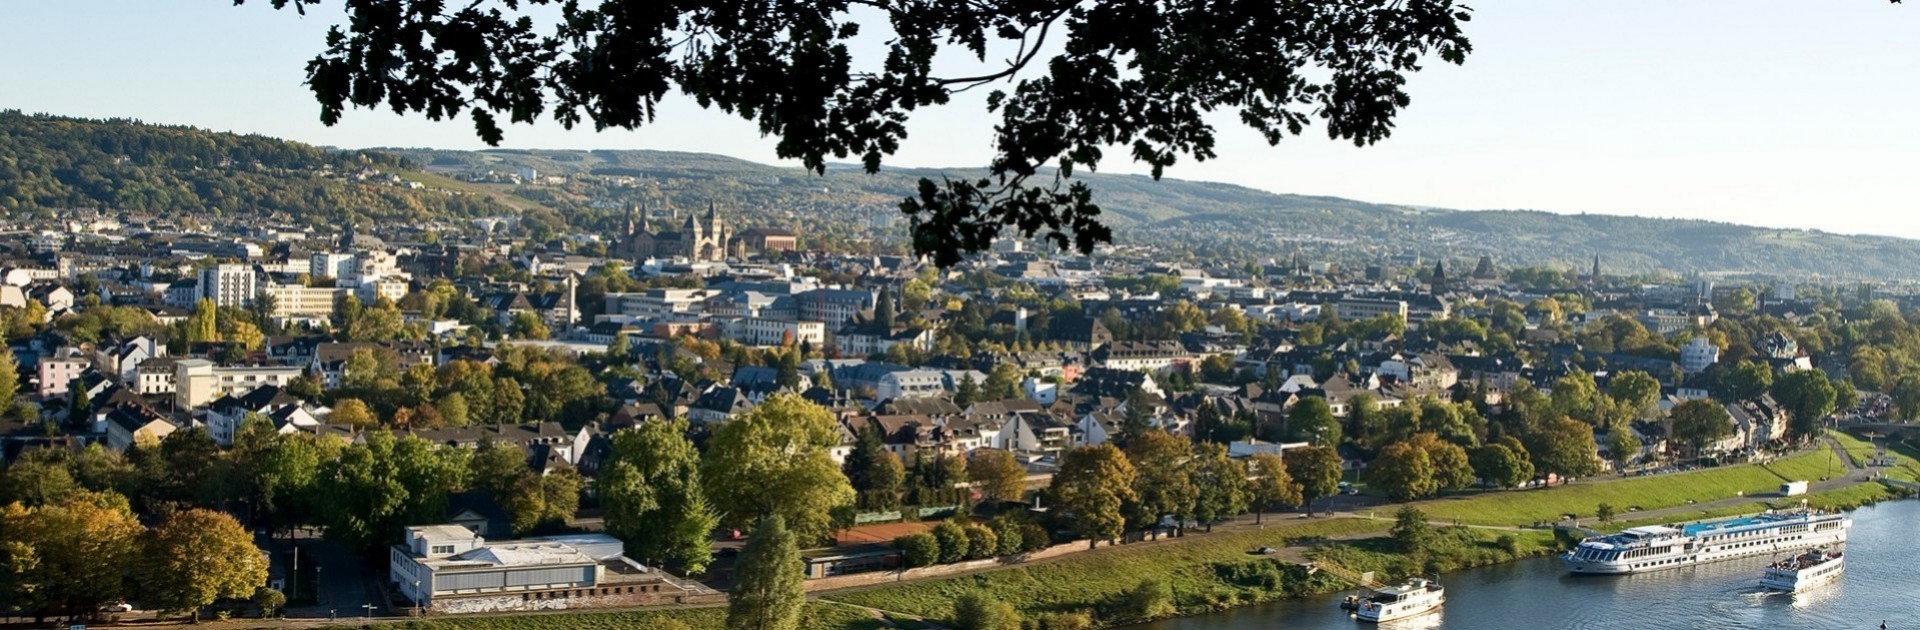 Trier Panorama